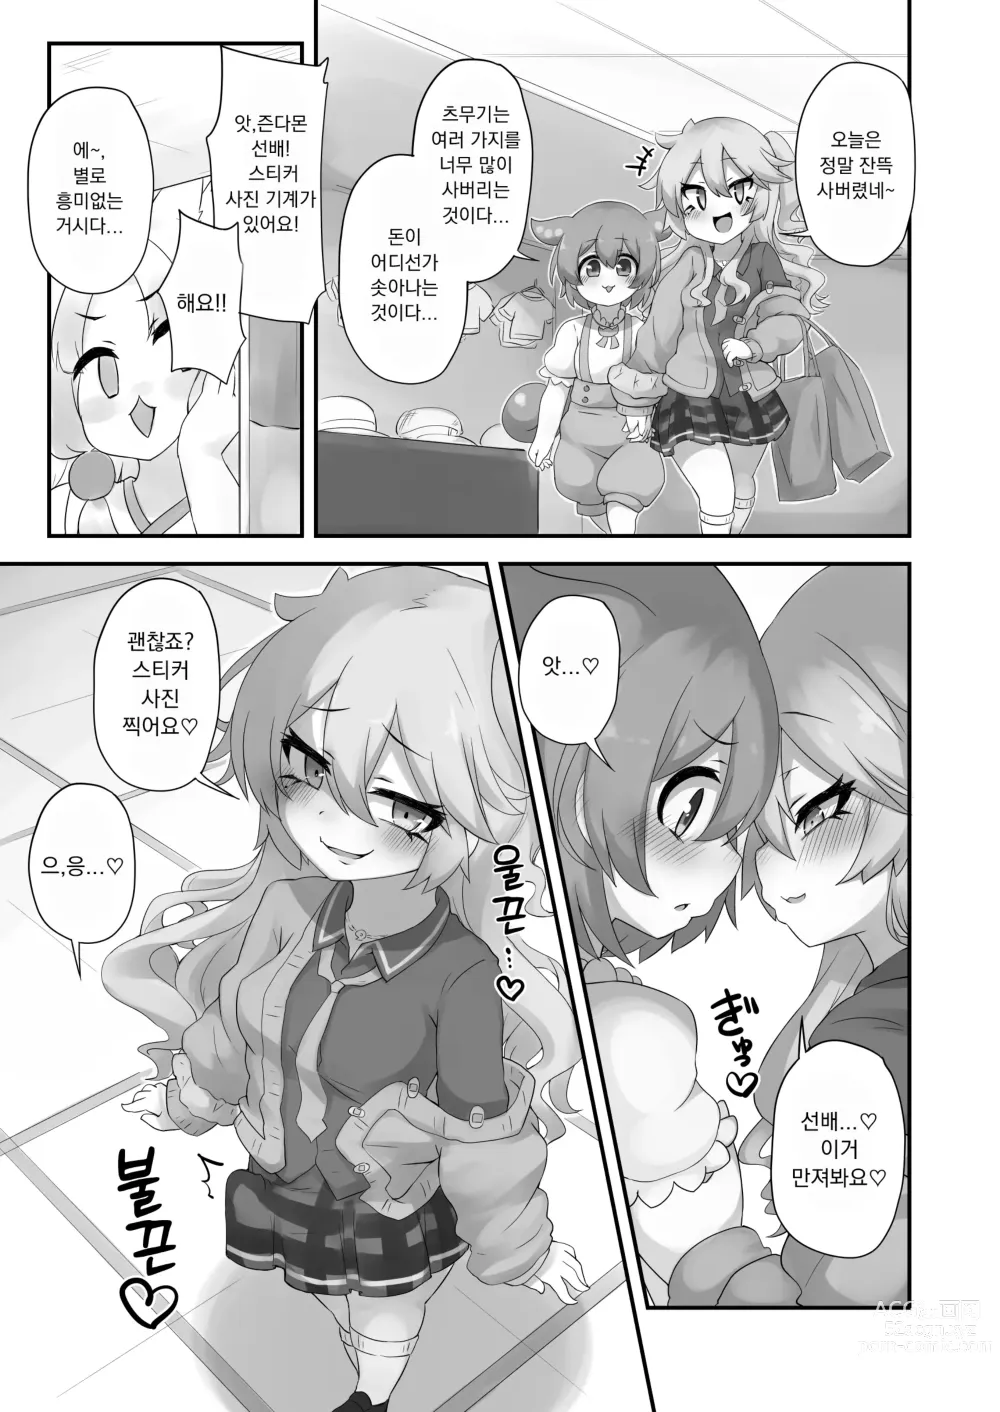 Page 21 of doujinshi 뭔가 생겨난 것이다!?